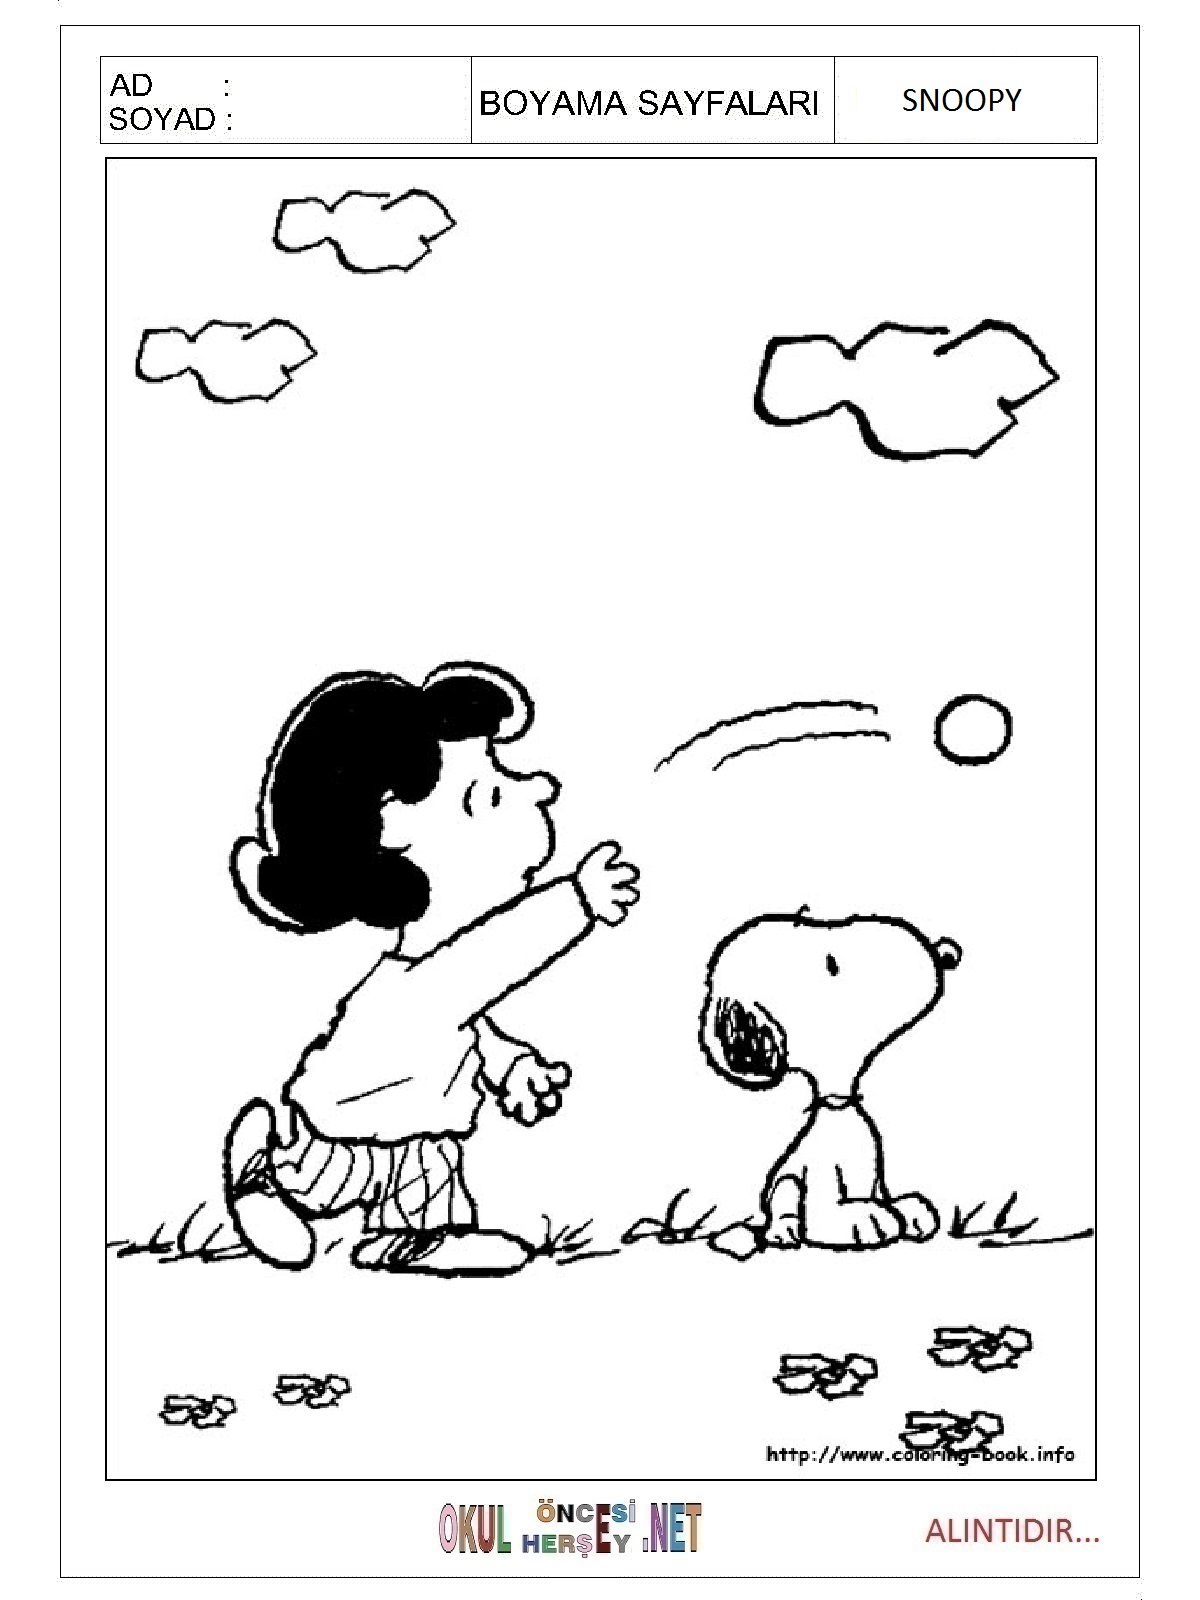 Snoopy boyama sayfaları 3